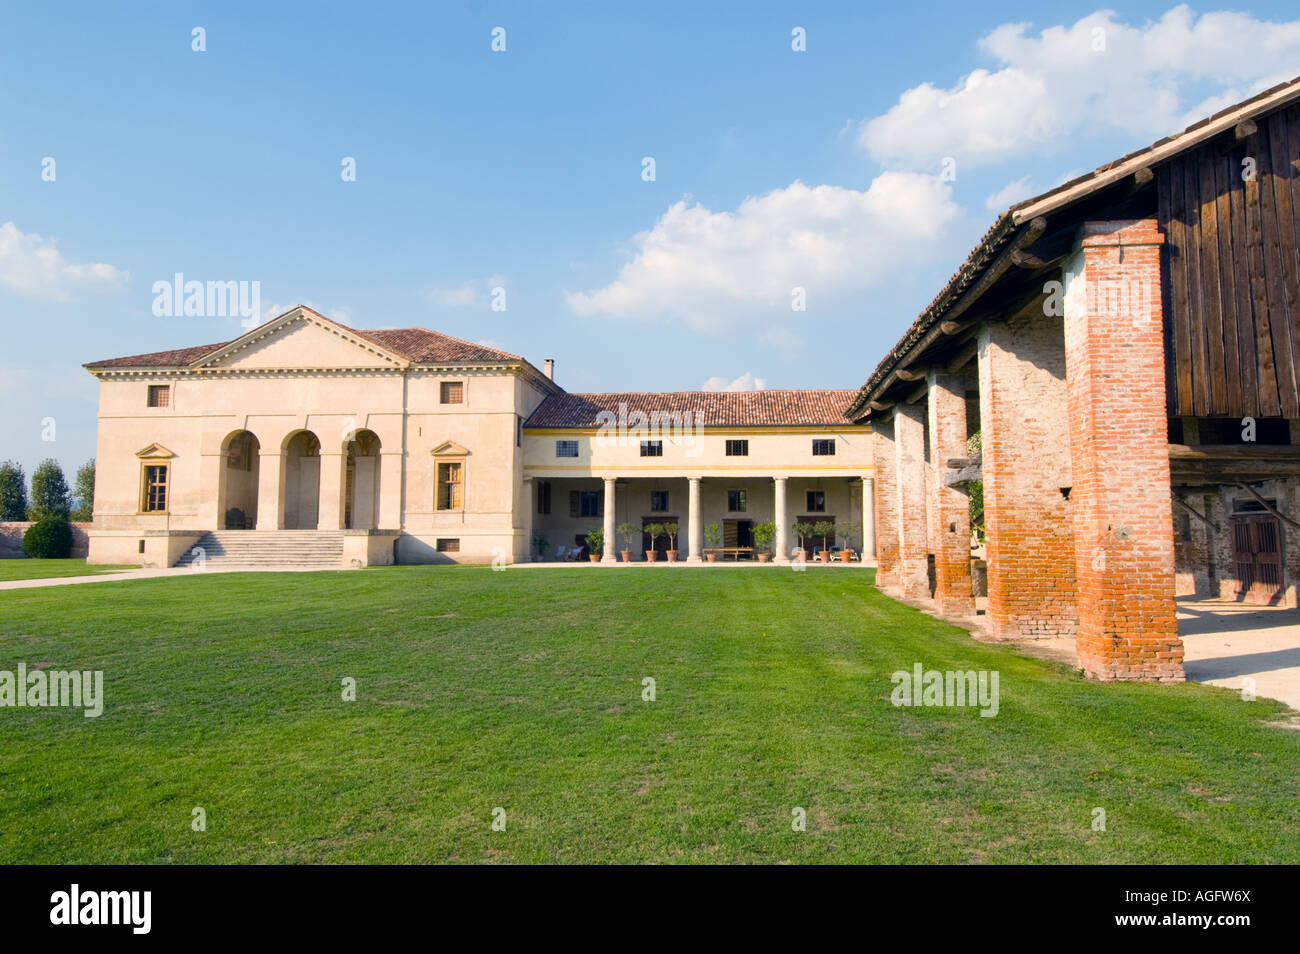 Villa Saraceno beim Finale in der Nähe von Vicenza, Italien. Der Architekt Andrea Palladio 1550. Bild zeigt die alte Scheune auf rechten Seite. Stockfoto